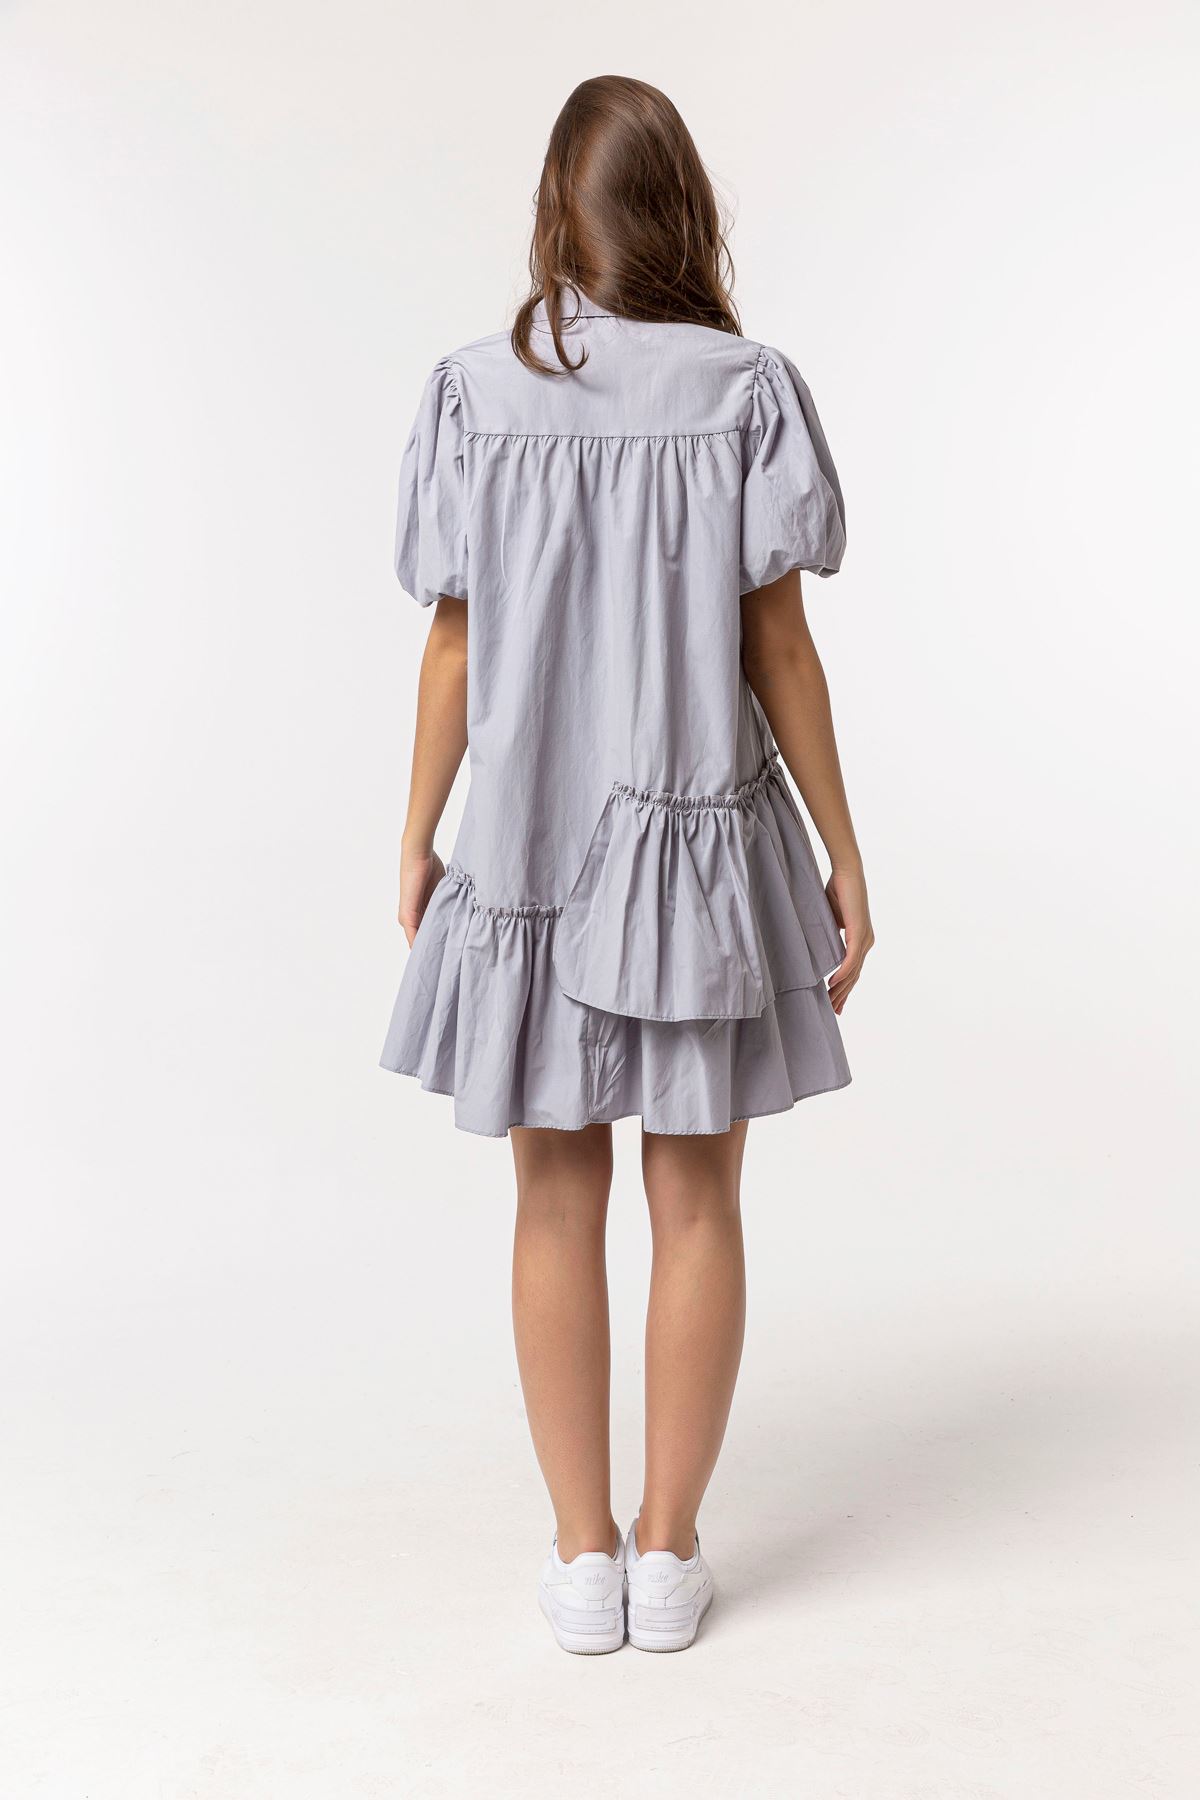 Soft Kumaş Gömlek Yaka Oversize/Salaş Fırfır Detaylı Kadın Elbise-Gri